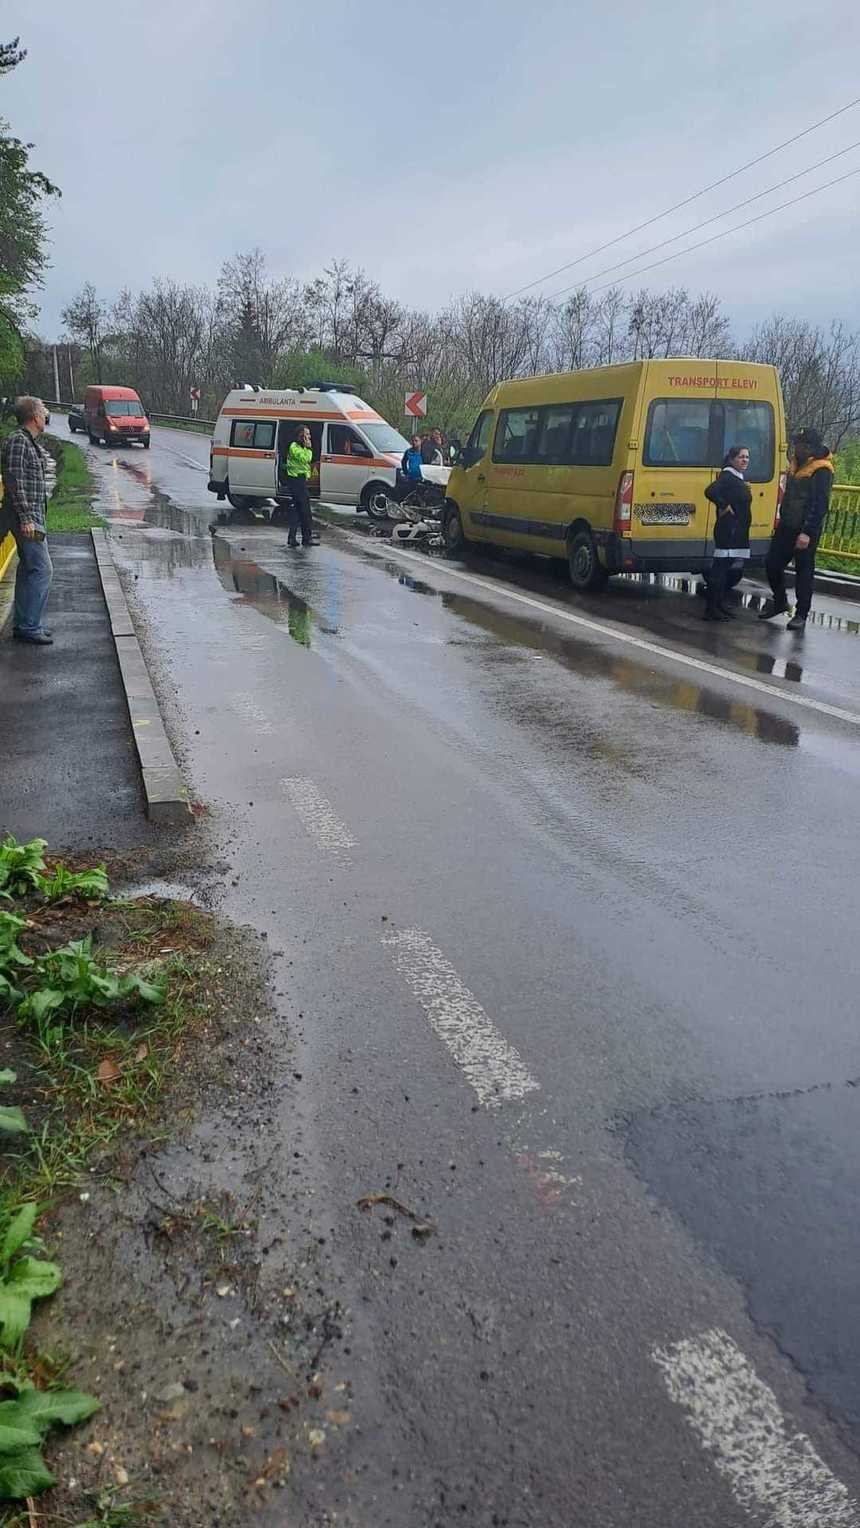 UPDATE - Plan Roşu de Intervenţie la Buzău, după un accident în care a fost implicat un microbuz care transporta copii şi o maşină  / Din cele 14 persoane implicate, 10 au ajuns la spital, 8 fiind copii